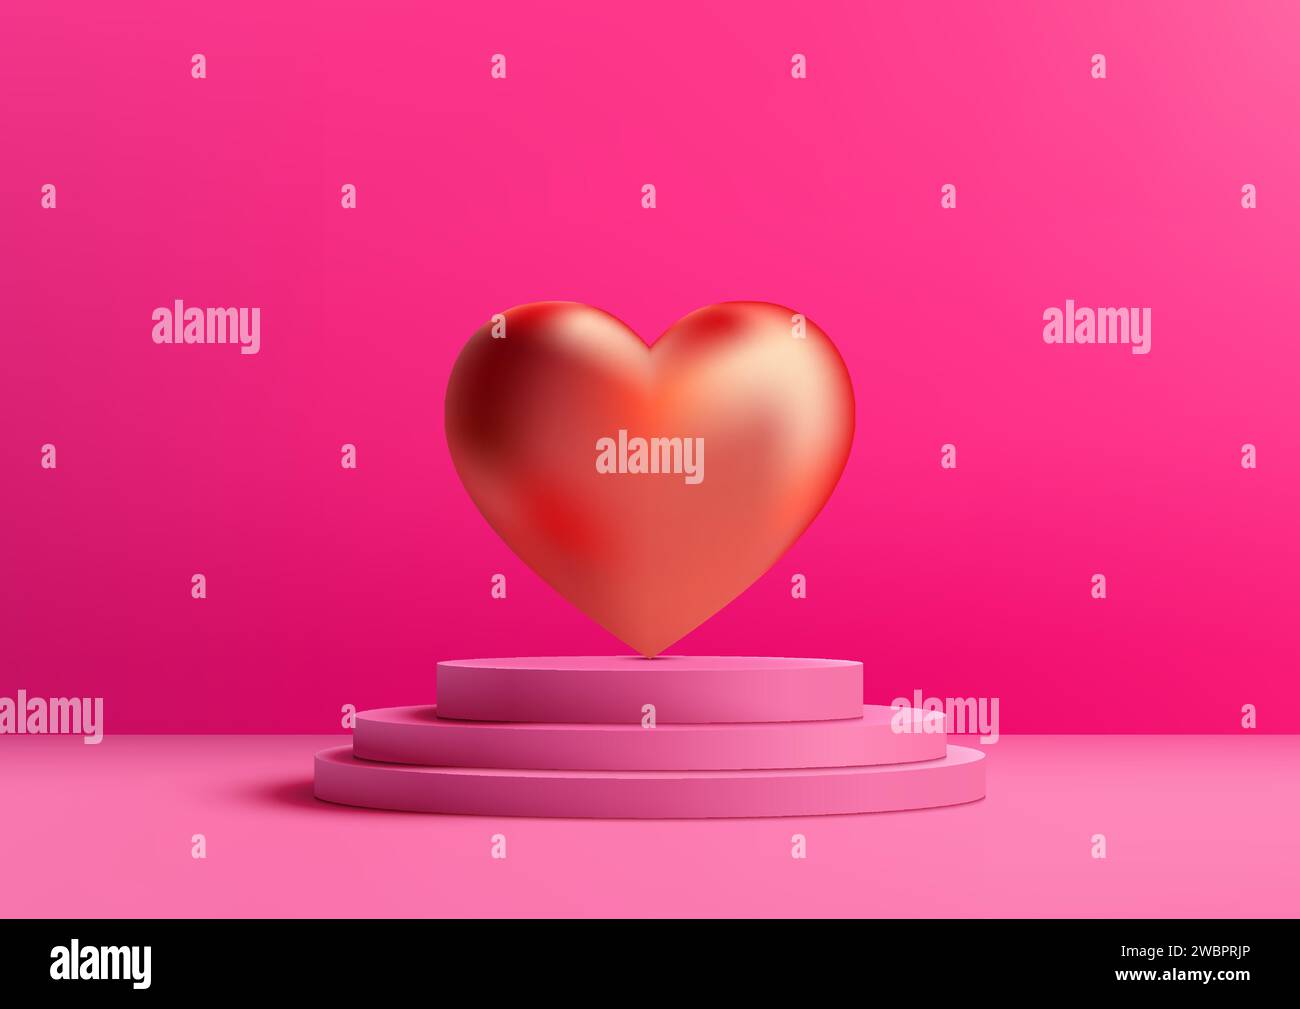 Valentinstag-Display mit diesem pinkfarbenen 3D-Podium-Modell. Rotes Herz mit glänzender Kulisse, perfekt für die Präsentation von Produkten, Marken oder romantischen Botschaften. Vec Stock Vektor